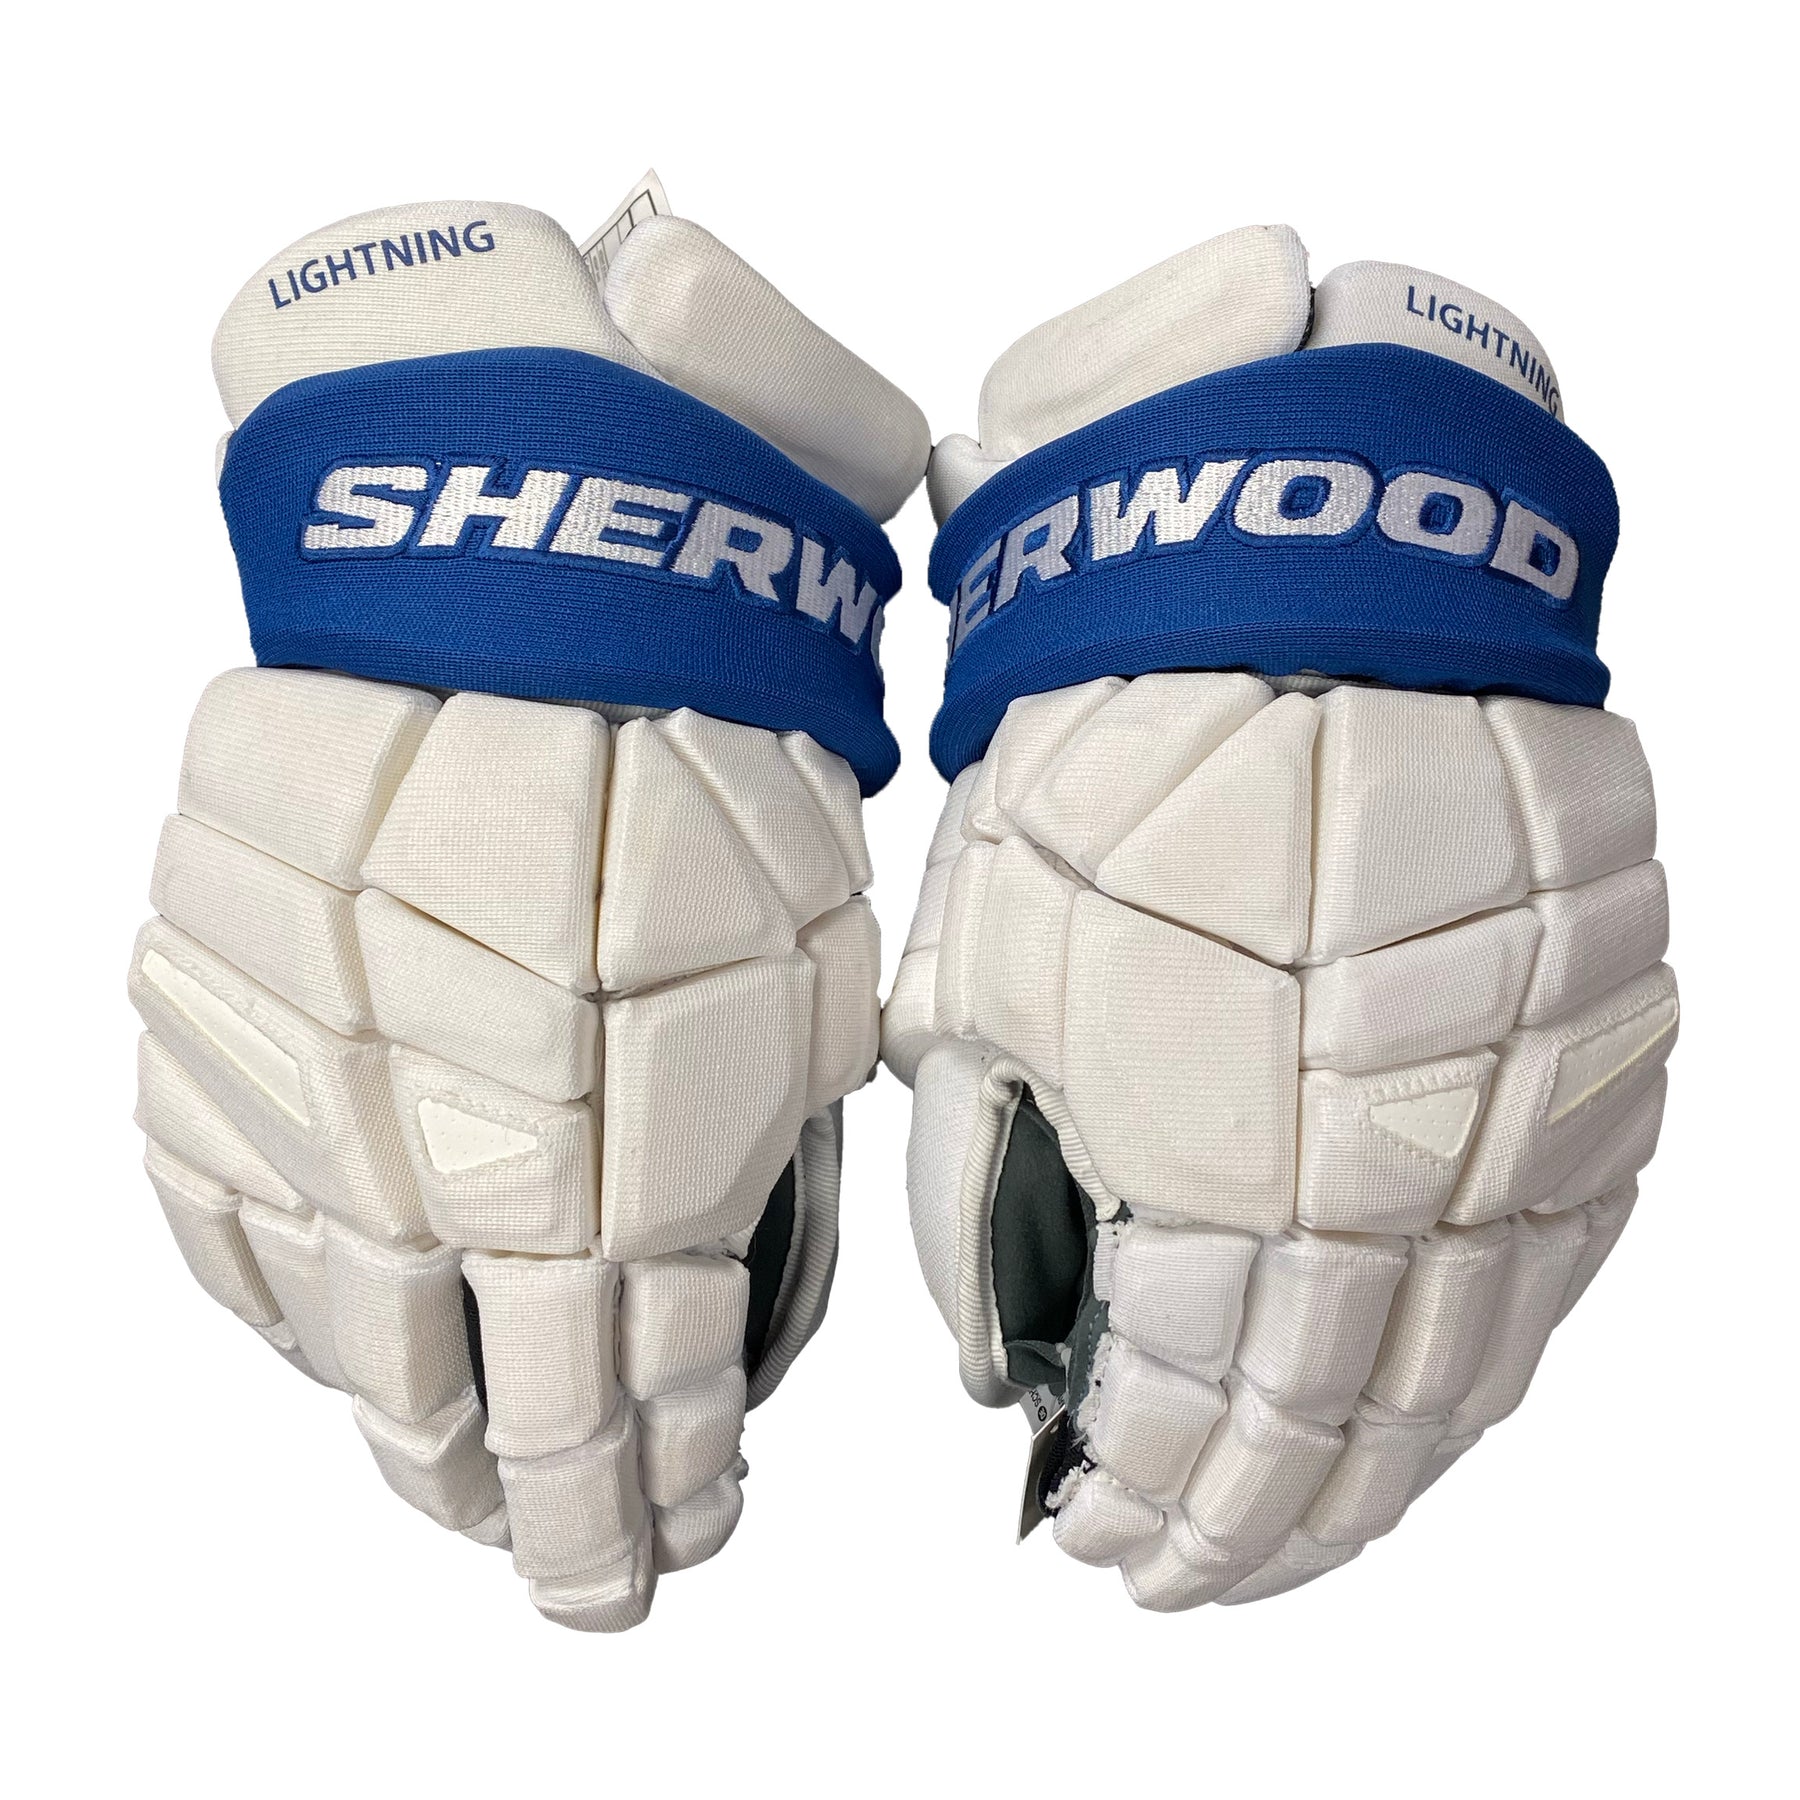 Sherwood Rekker Legend Pro - NHL Pro Stock Glove - Edmonton Oilers